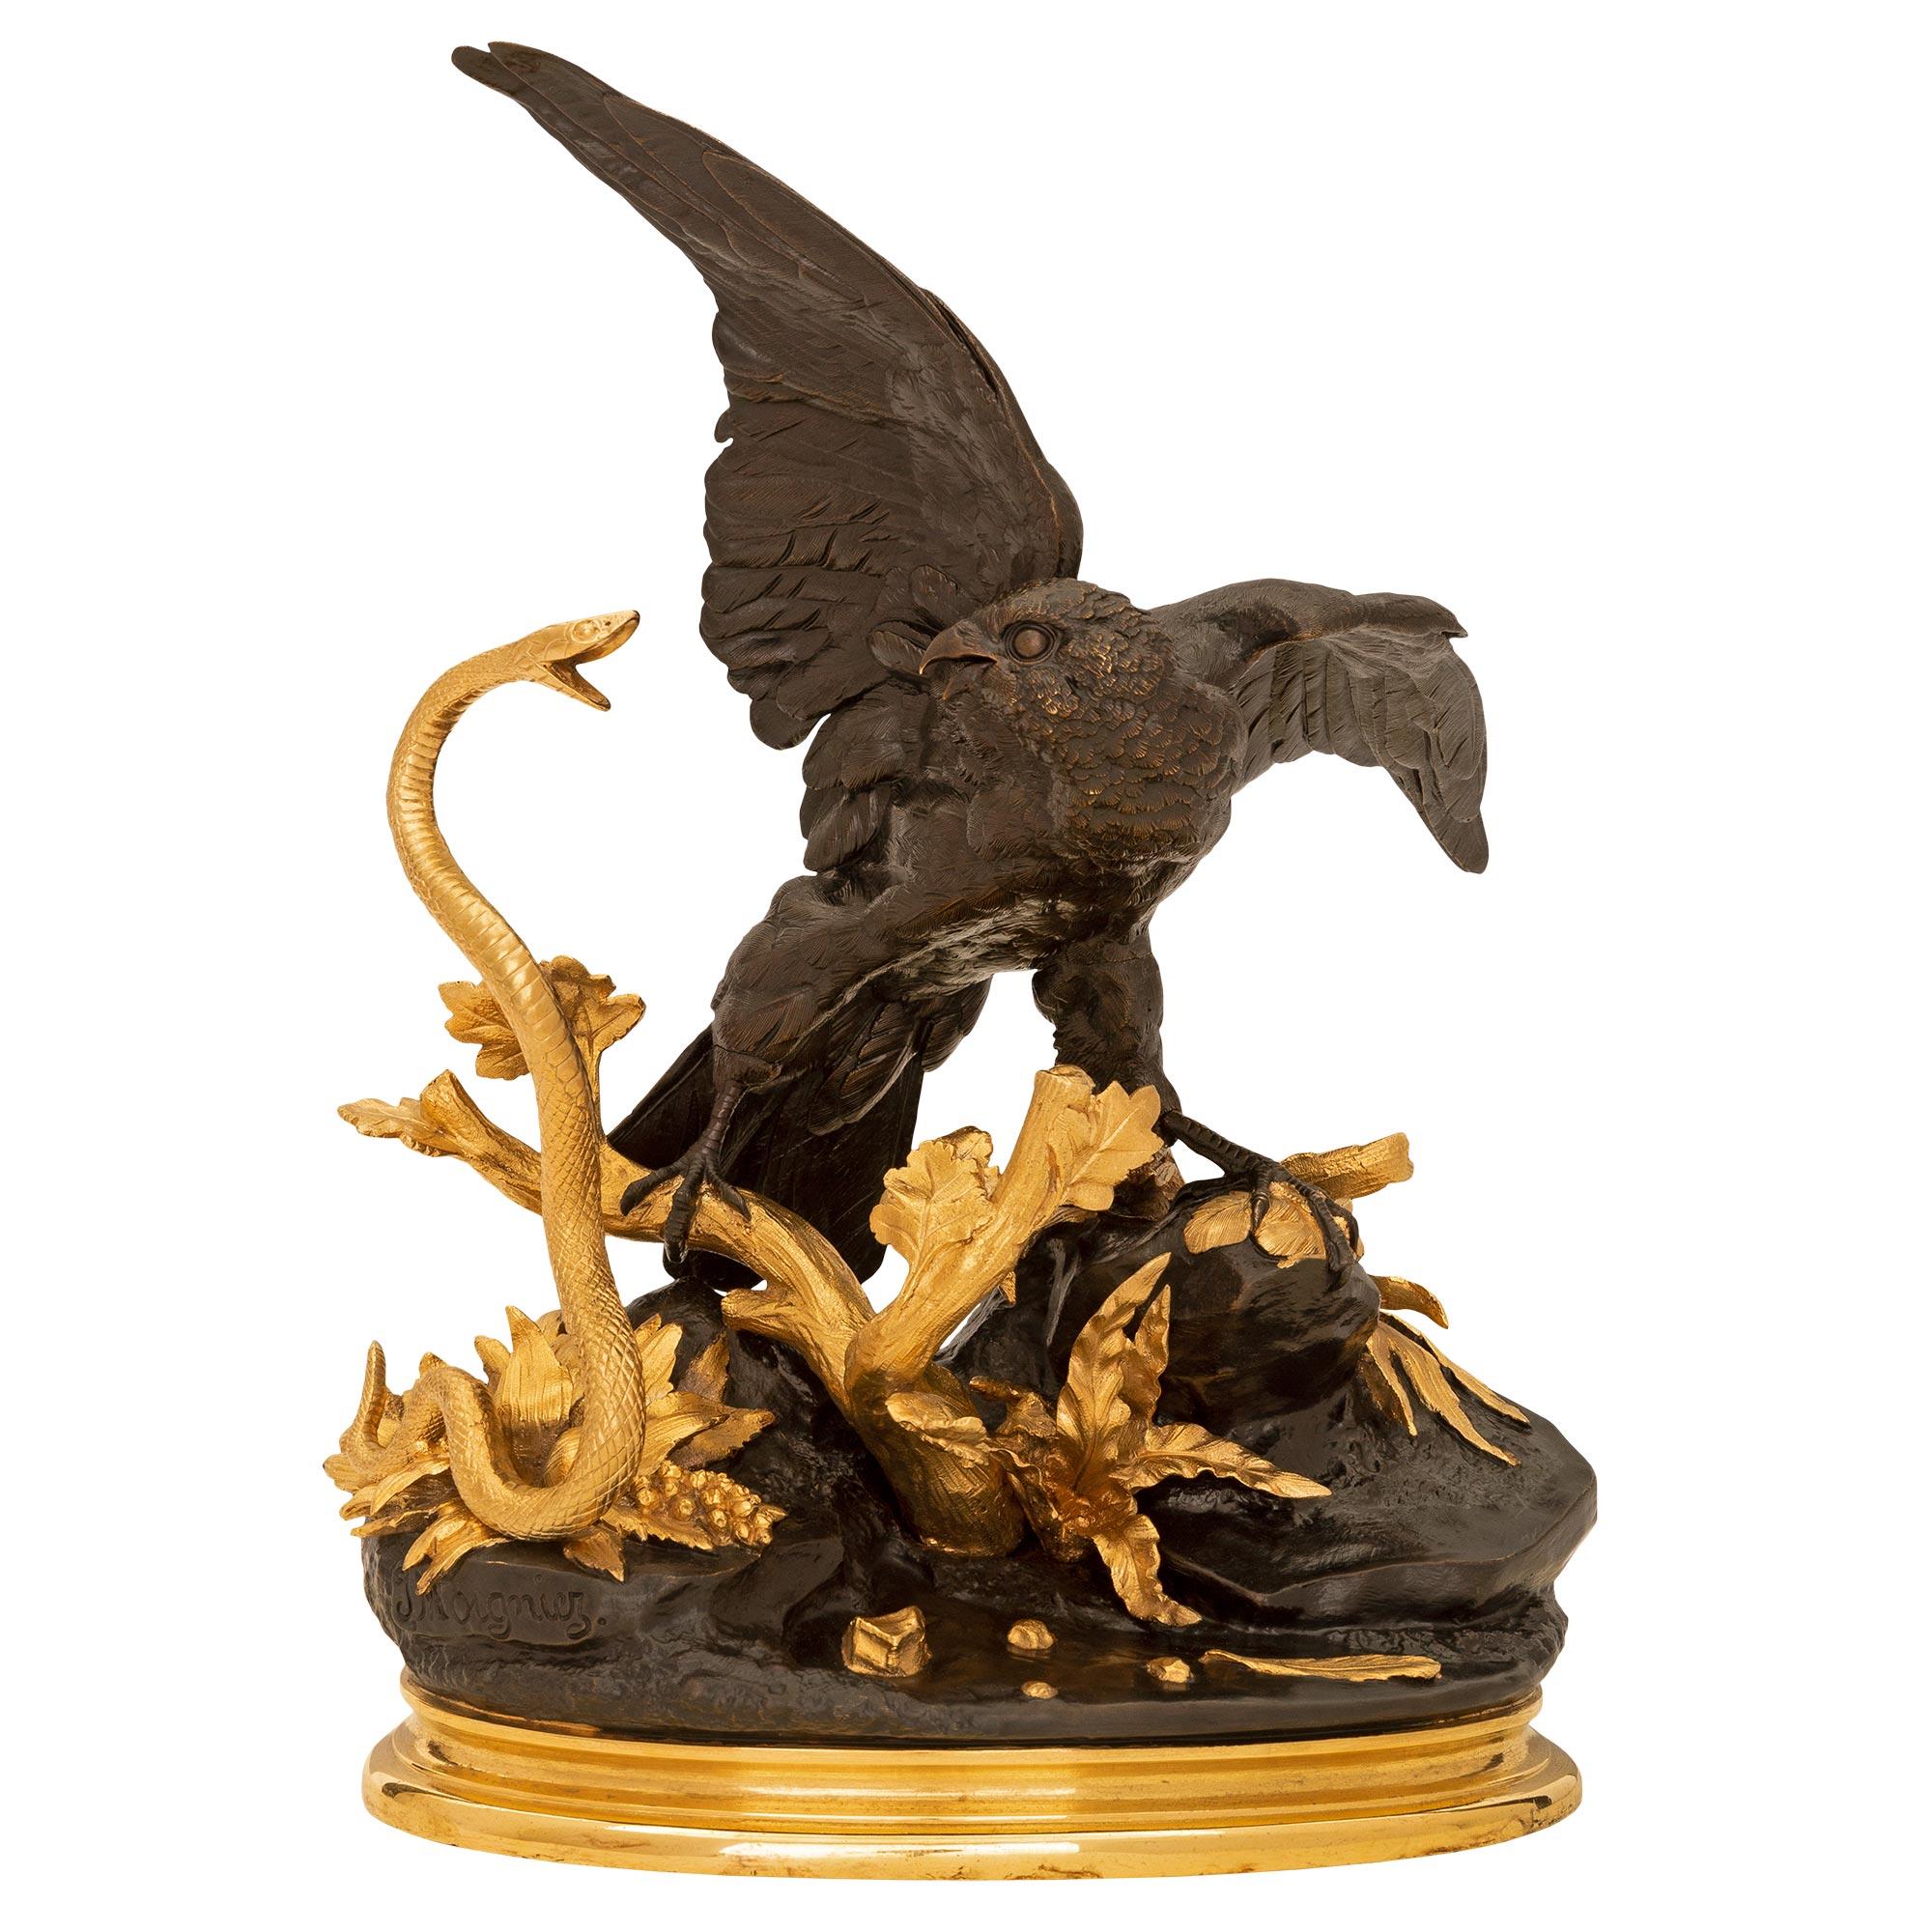 Statue en bronze patiné et bronze doré de style Louis XVI, signée par Jules Moigniez, d'une qualité exceptionnelle. La statue est surmontée d'une élégante base oblongue en bronze doré tacheté, sous le motif en bronze patiné merveilleusement exécuté,